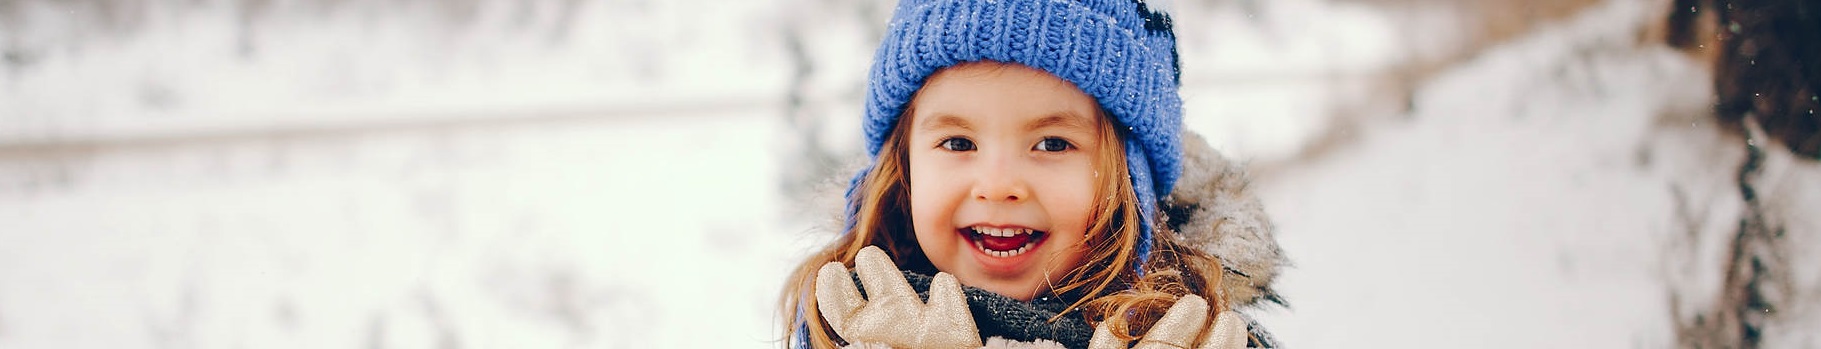 Jak pielęgnować skórę dziecka zimą?